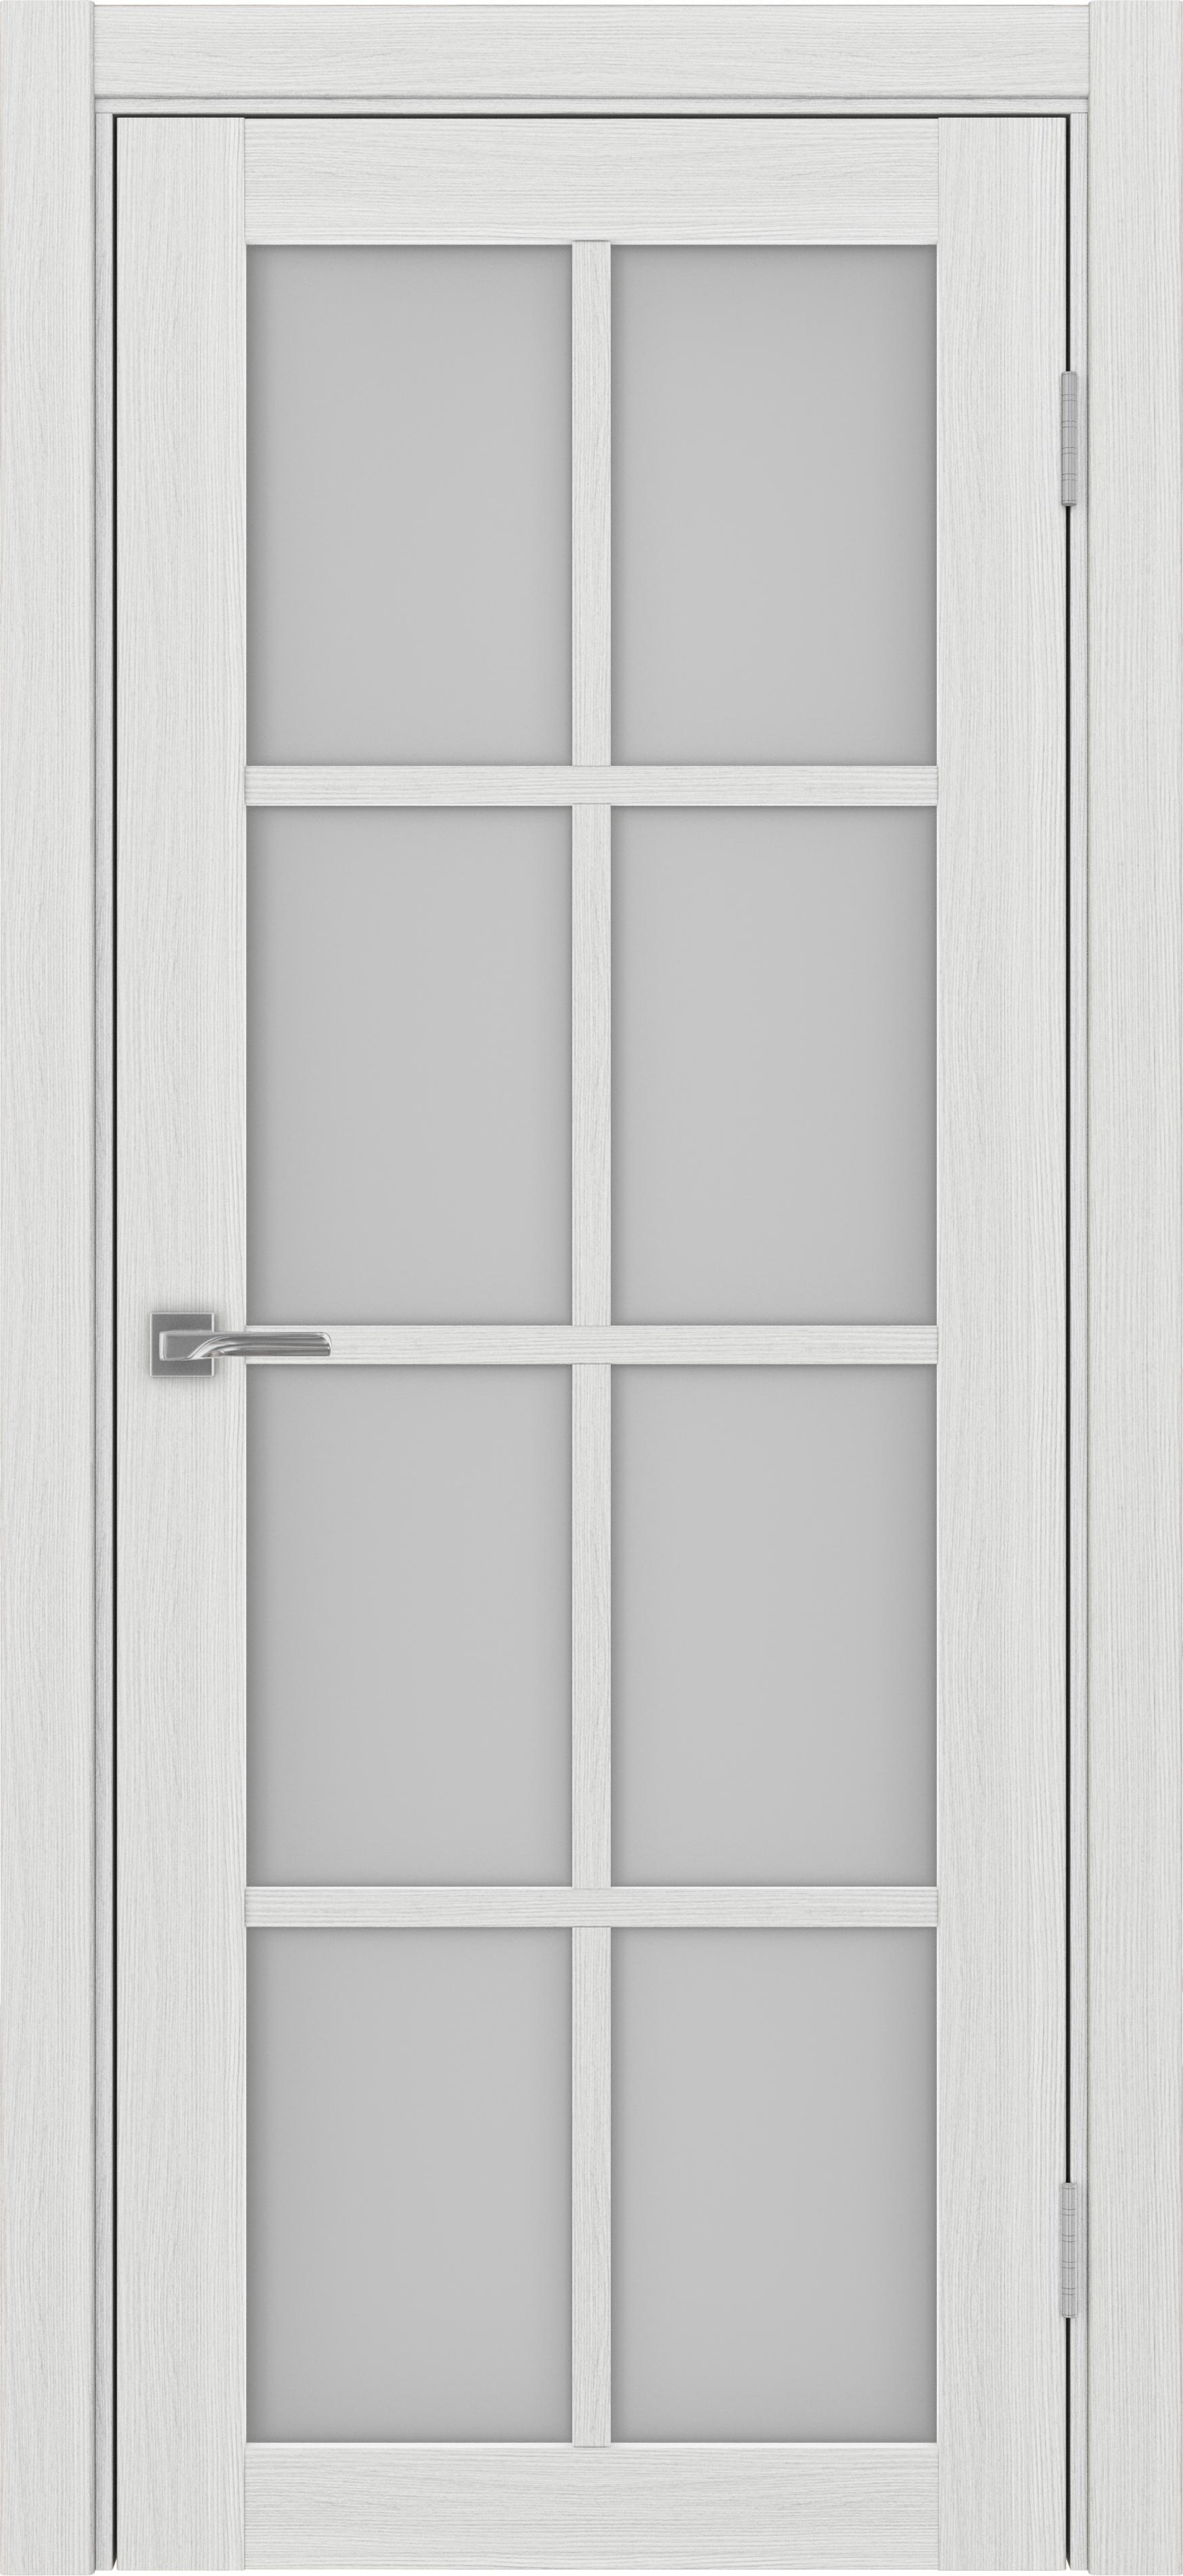 Межкомнатная дверь «Турин 541.2222 Ясень серебристый» стекло сатин